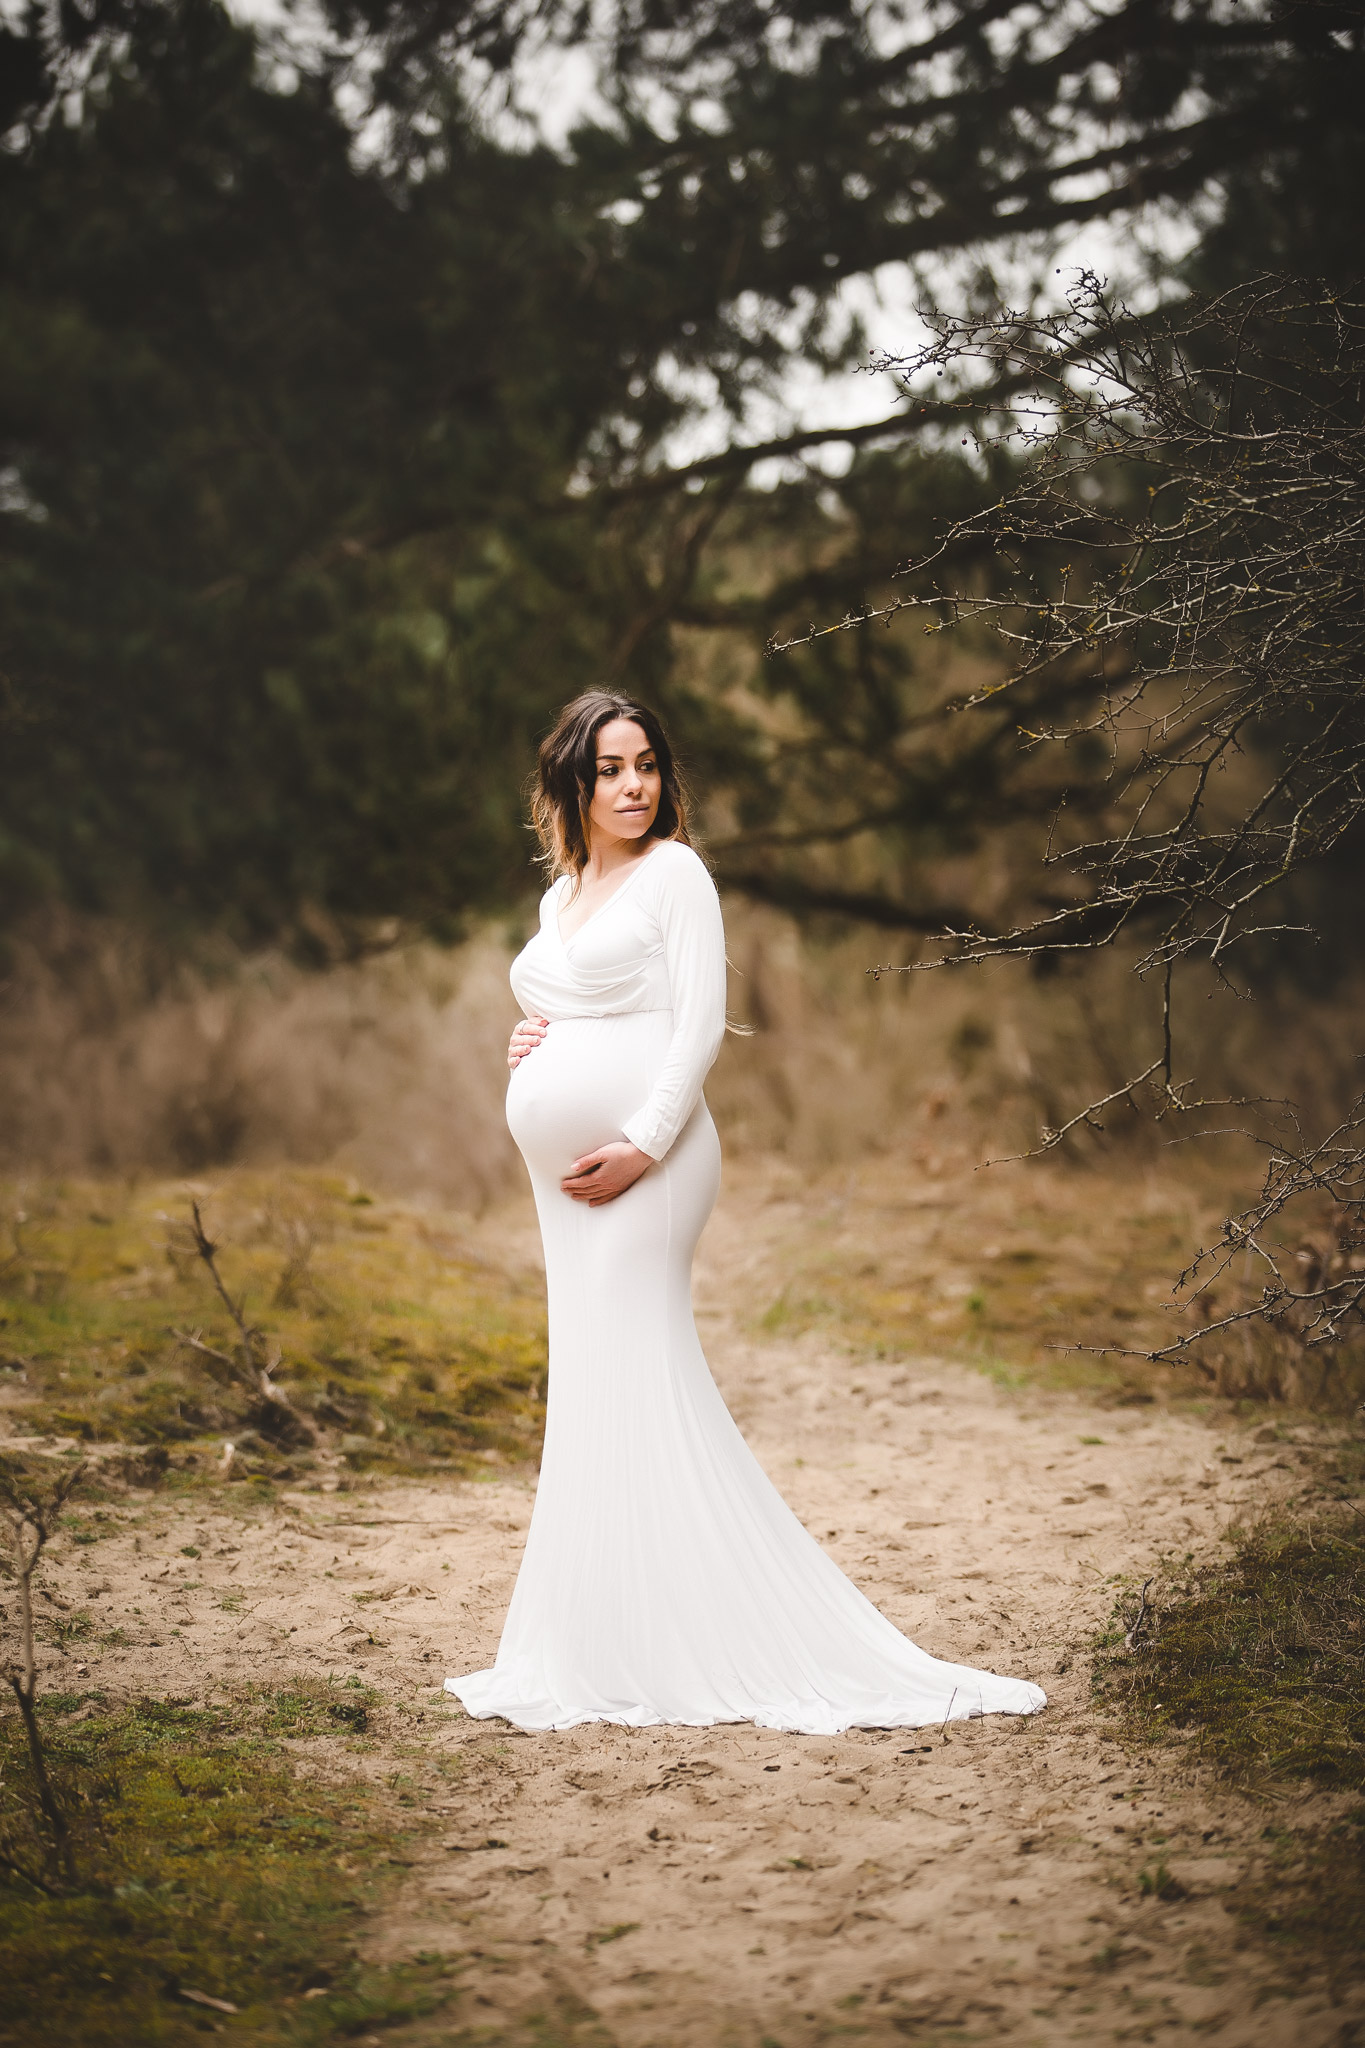 Zwangershoot bos duingebied mooie witte jurk Purmerend Zaandam 